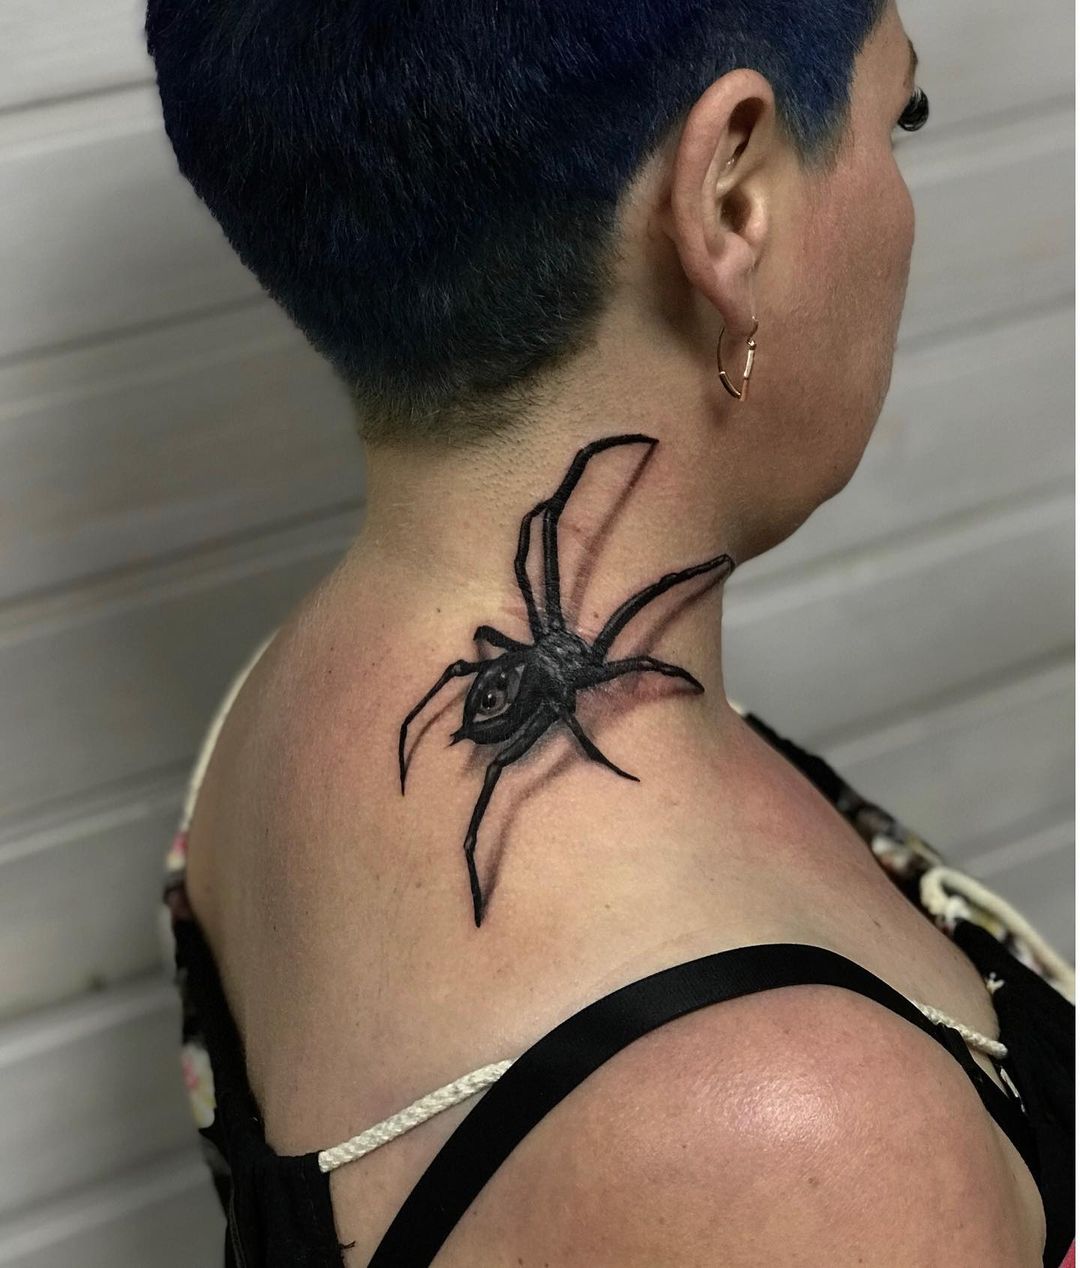 Что означает тату паук?